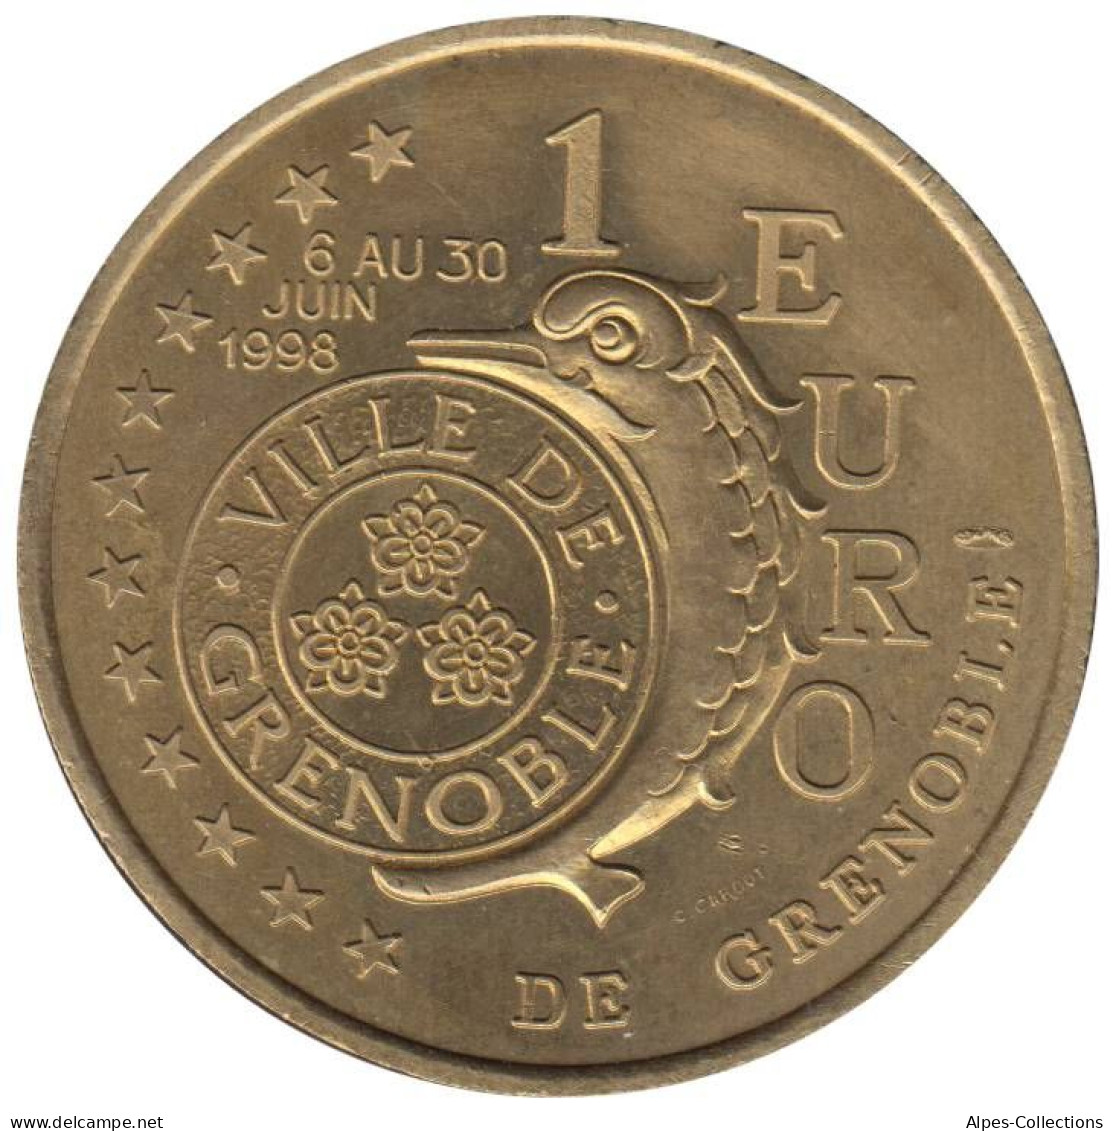 GRENOBLE - EU0010.1 - 1 EURO DES VILLES - Réf: T486 - 1998 - Euro Der Städte